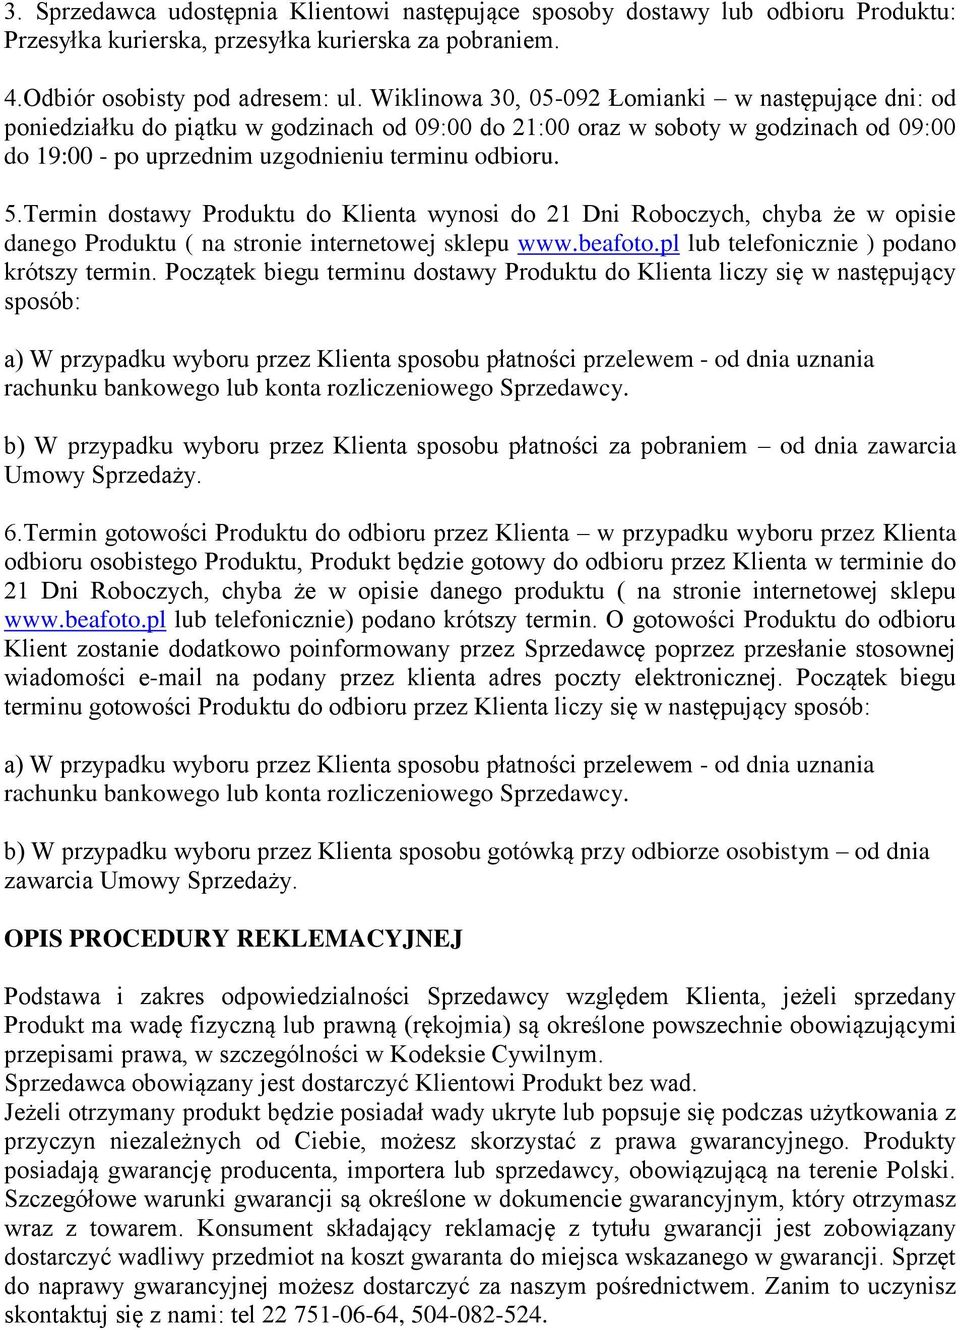 Termin dostawy Produktu do Klienta wynosi do 21 Dni Roboczych, chyba że w opisie danego Produktu ( na stronie internetowej sklepu www.beafoto.pl lub telefonicznie ) podano krótszy termin.